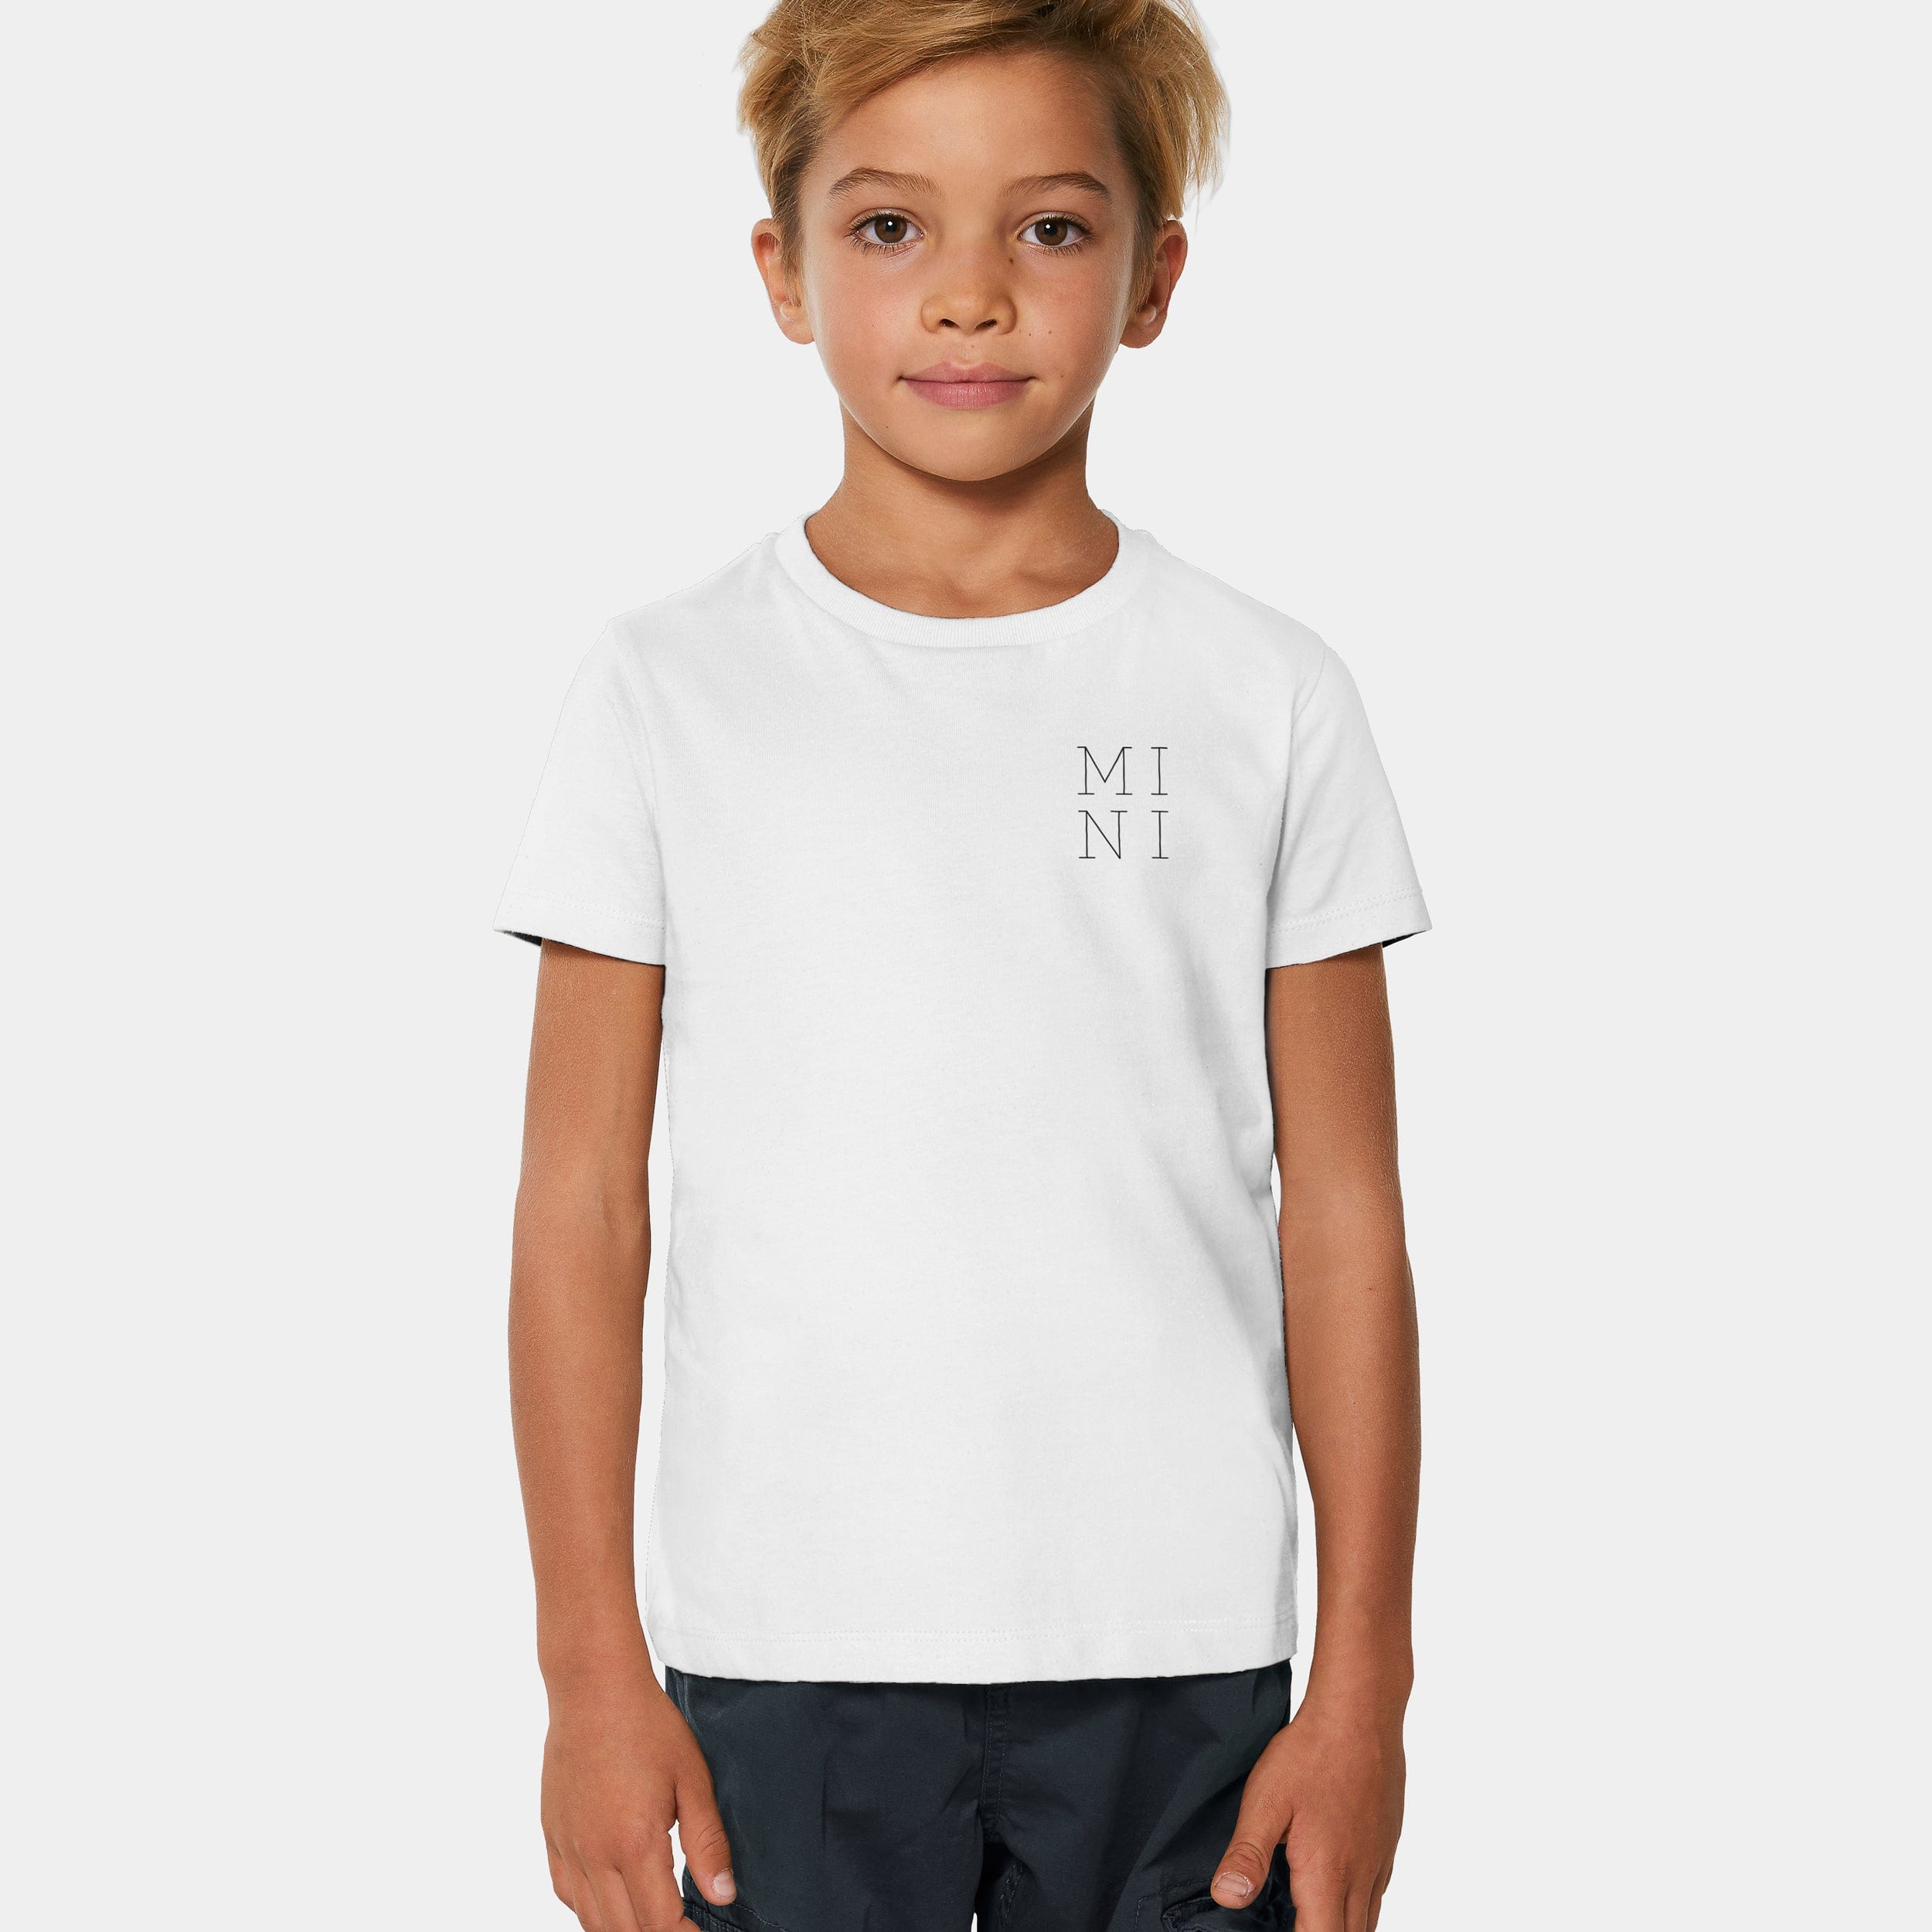 HEITER & LÄSSIG T-Shirt "MINI" 98/104 / weiß - aus nachhaltiger und fairer Produktion